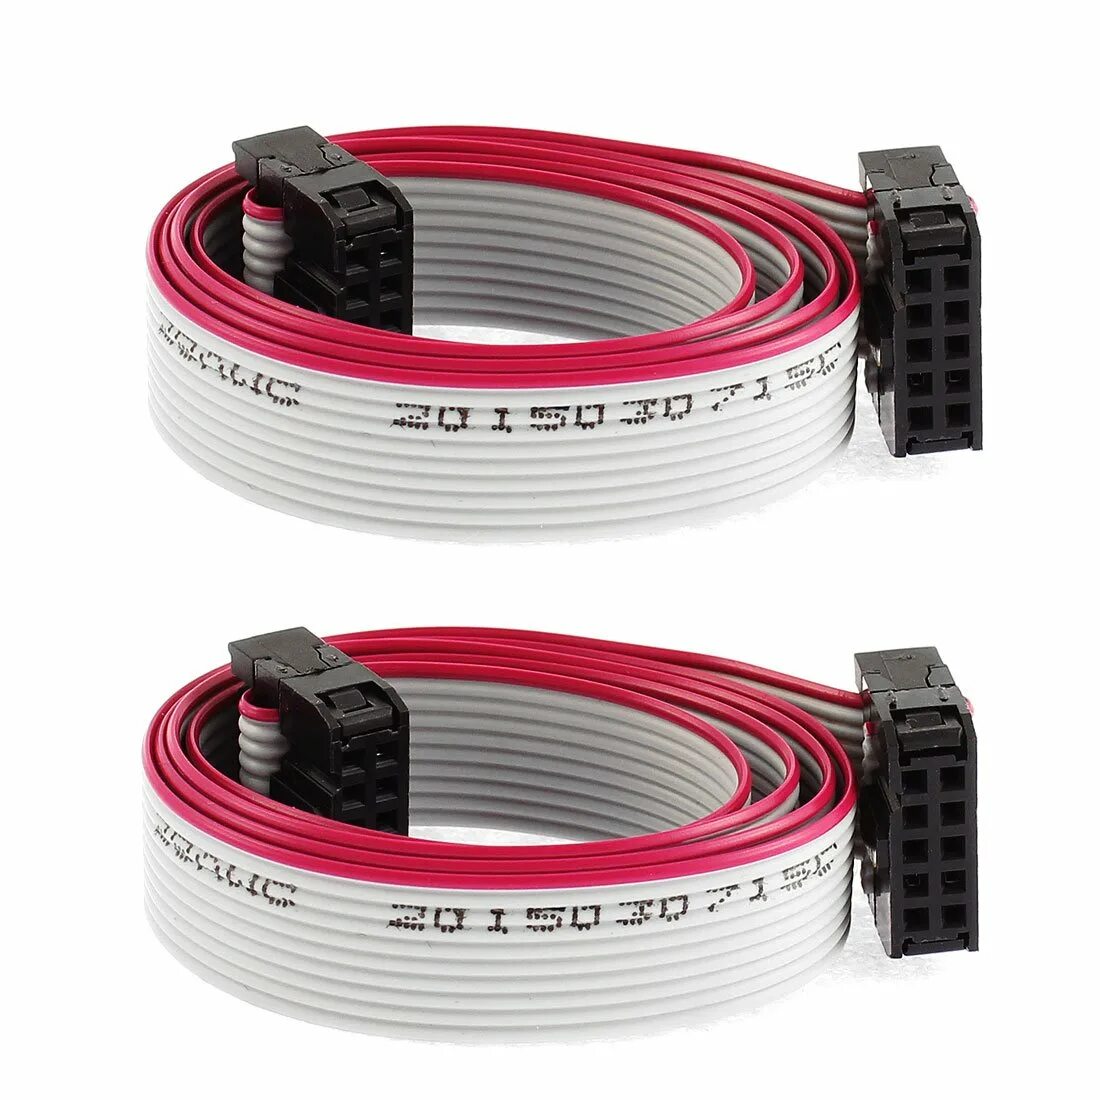 Flat кабель. Плоский кабель (Flat Cable). As-i разветвитель для плоского кабеля (Flat Cable 50 Meter EPDM ye). Кабель ленточный плоский FRC-40 (шаг 1.27мм). Провод ленточный ЛФ-10 (2х0,05).